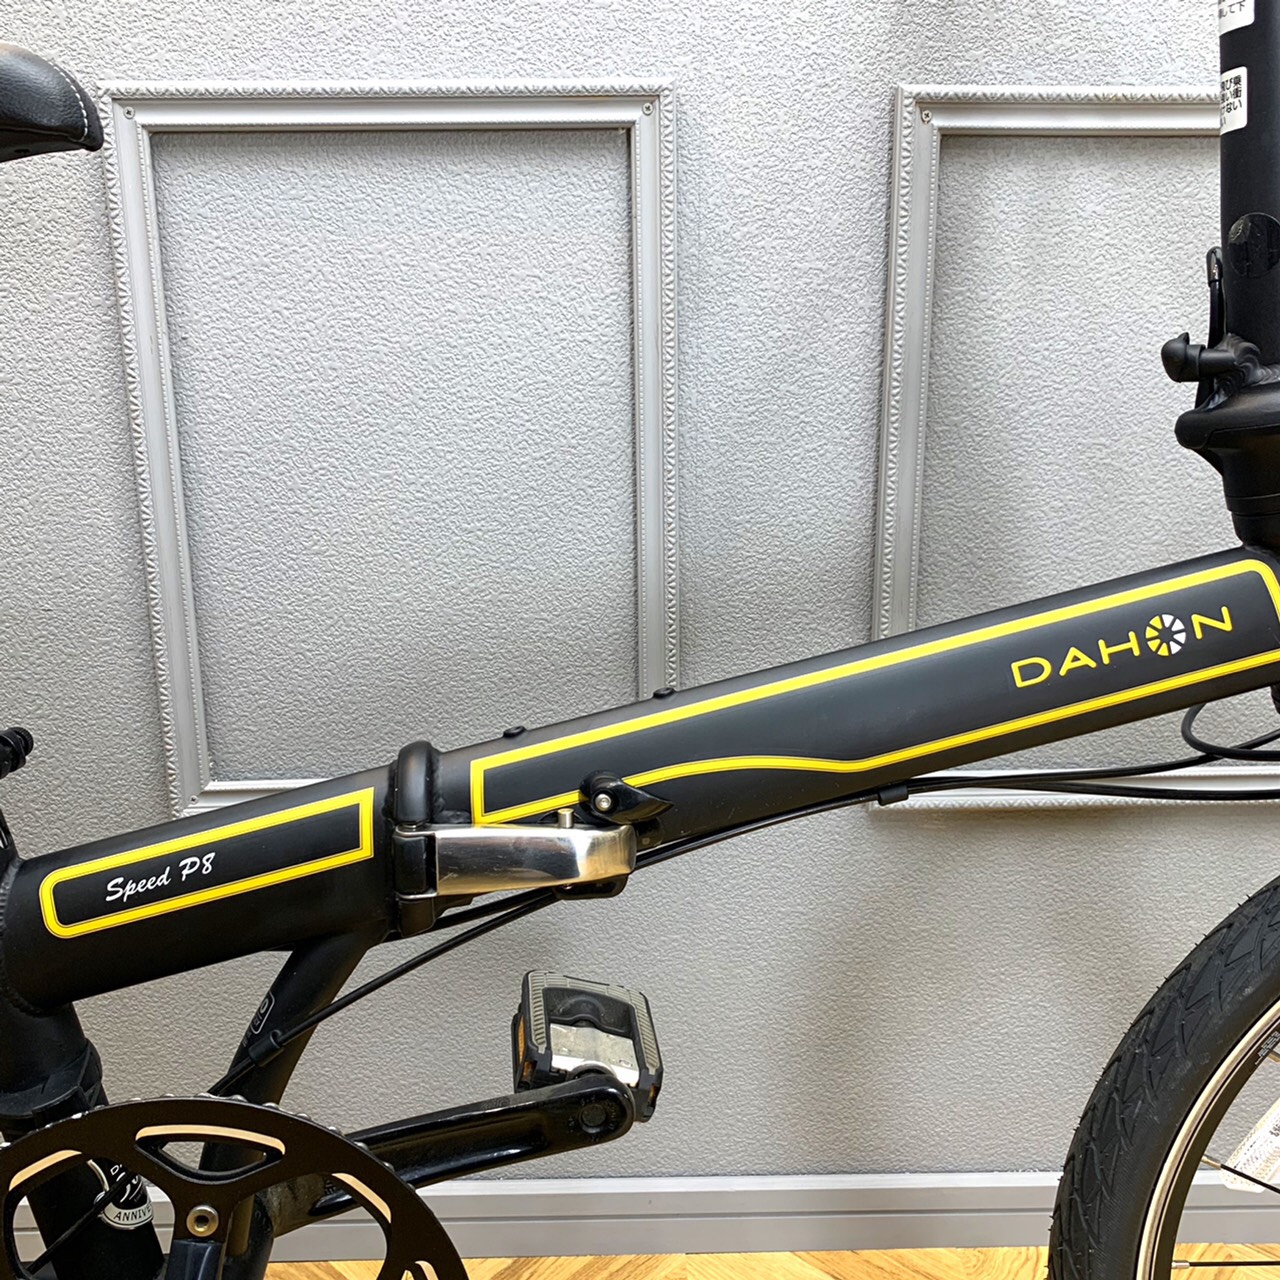 DAHON 折りたたみ自転車 2013年モデル Speed P8 30周年記念モデル3